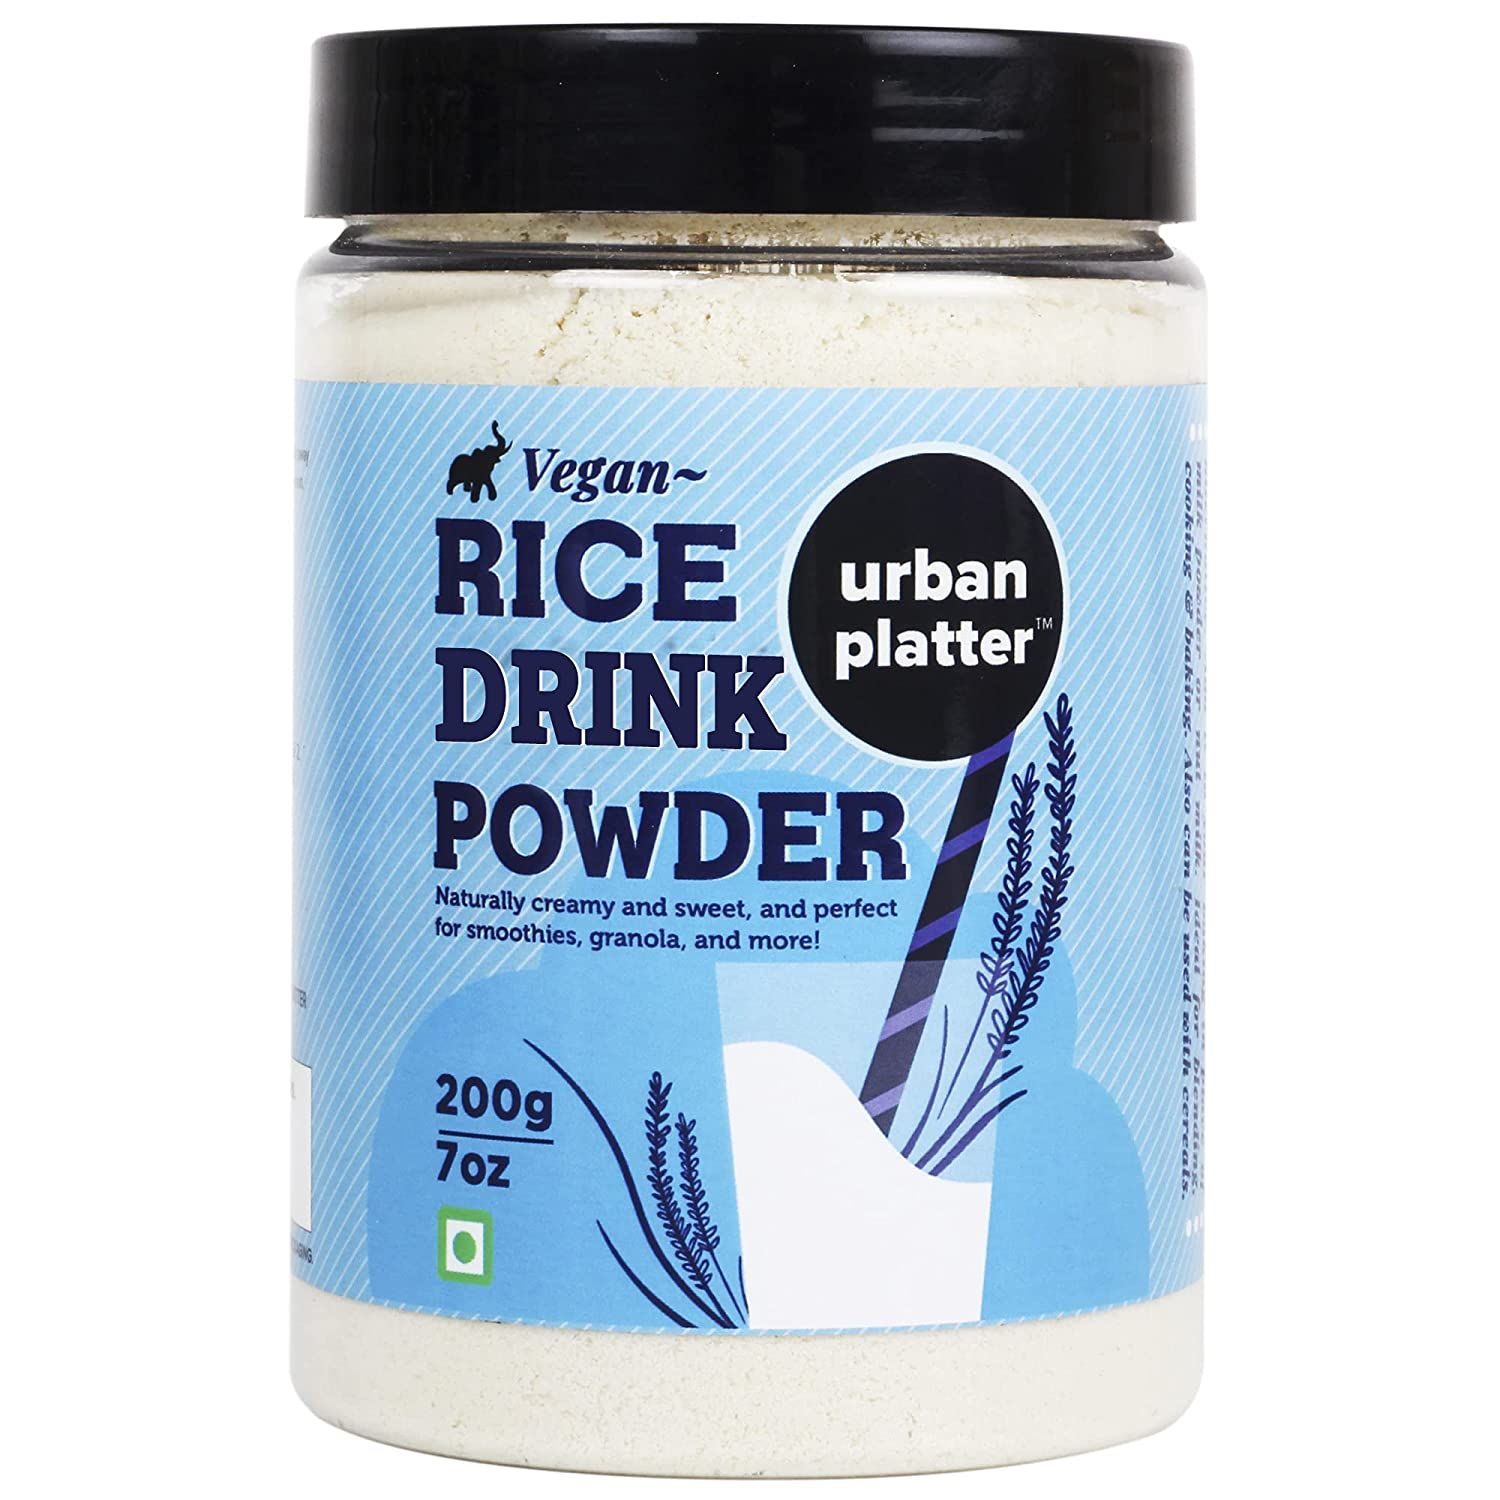 Urban Platter Vegan Rice Drink Powder Image